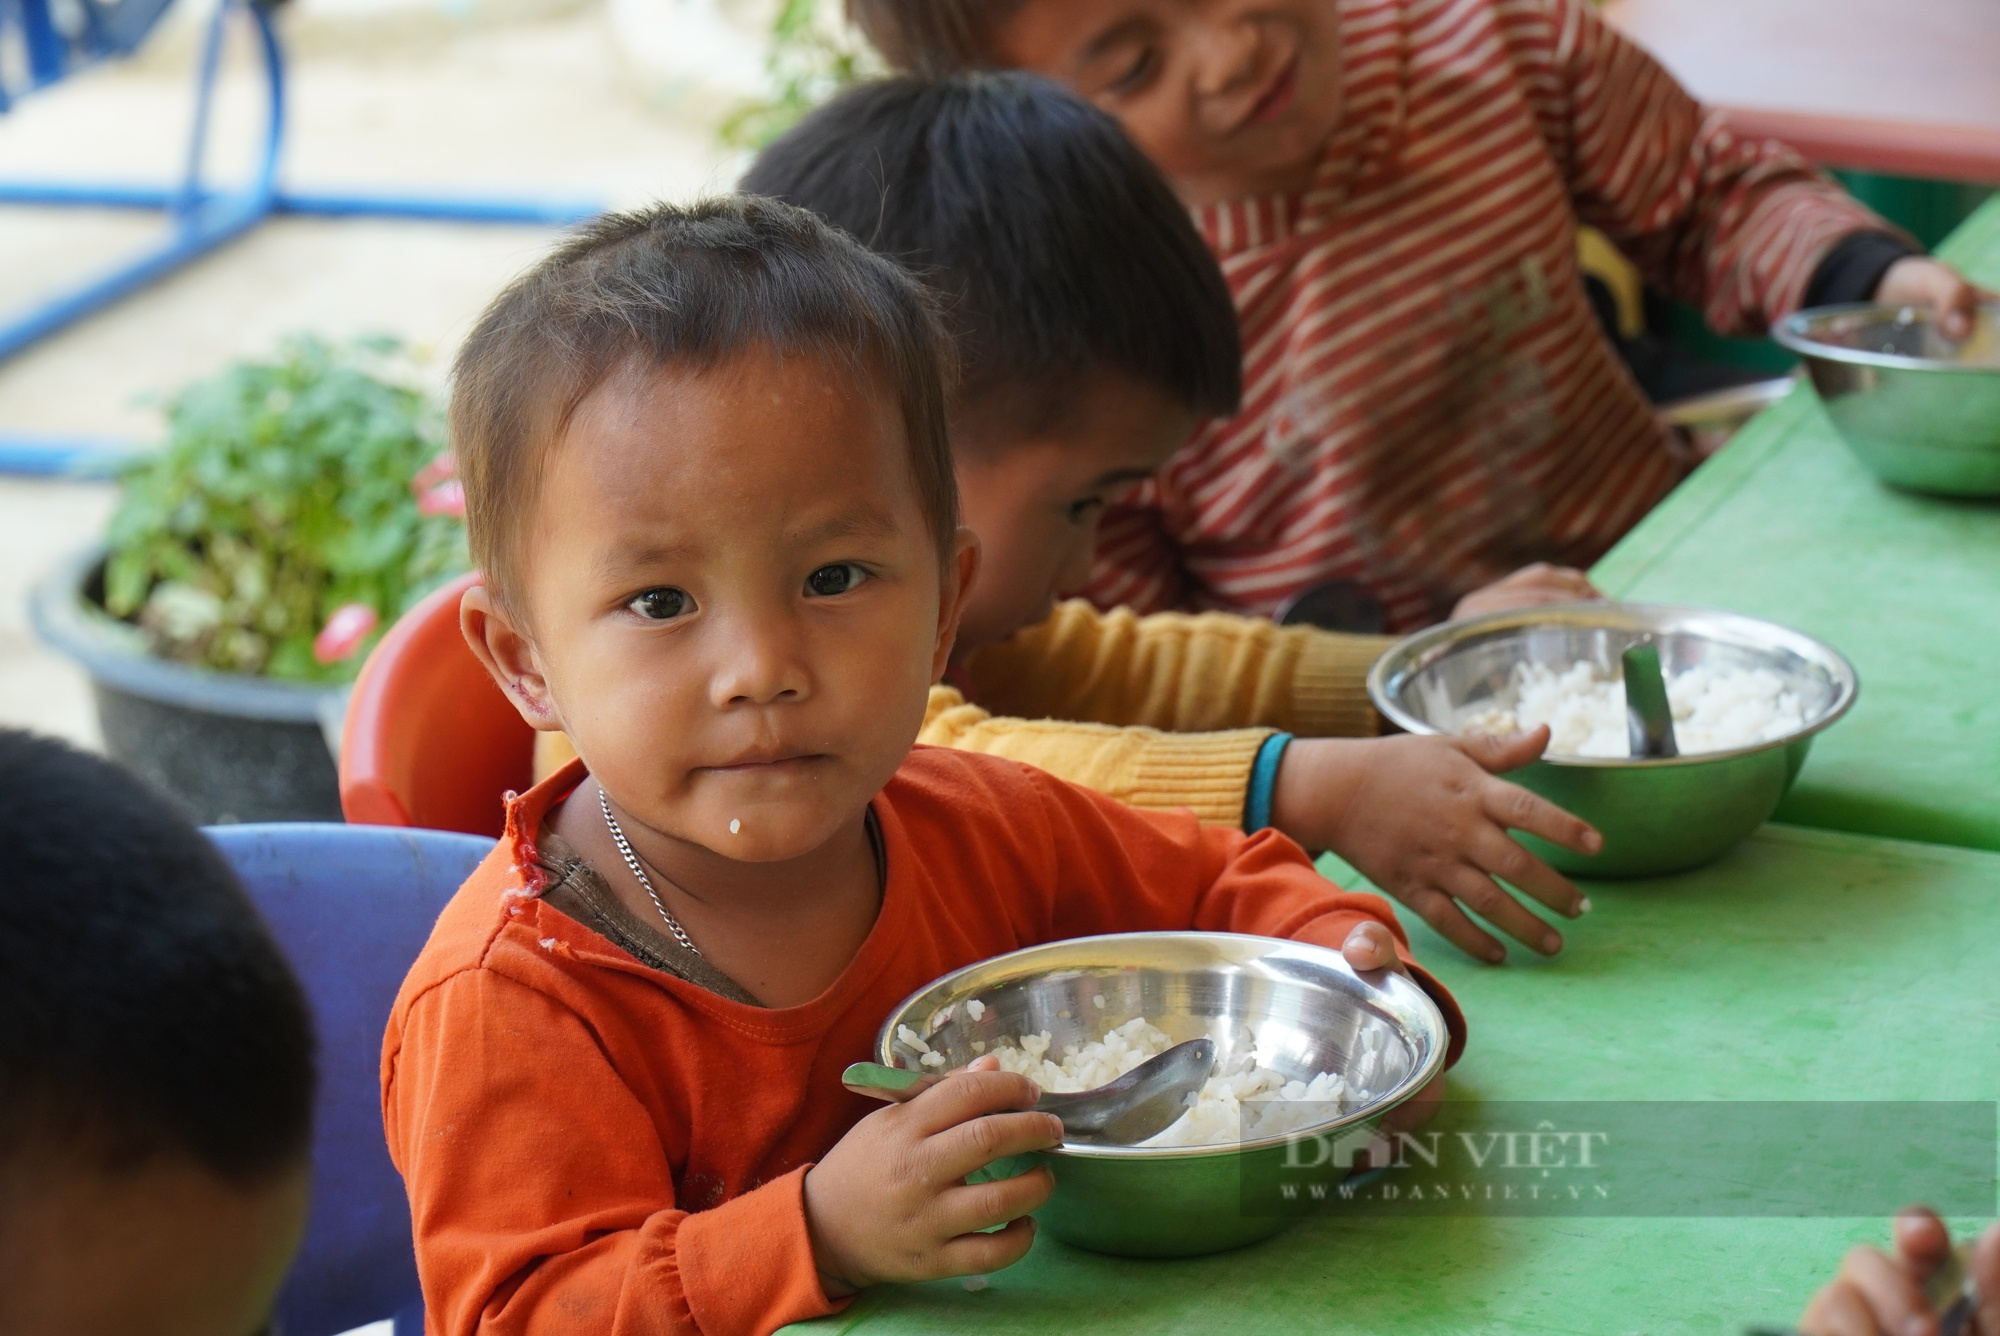 Nông nghiệp đảm bảo dinh dưỡng cho hộ nghèo: Cải thiện dinh dưỡng, nâng cao thể trạng, tầm vóc cho người Việt (Bài cuối) - Ảnh 4.